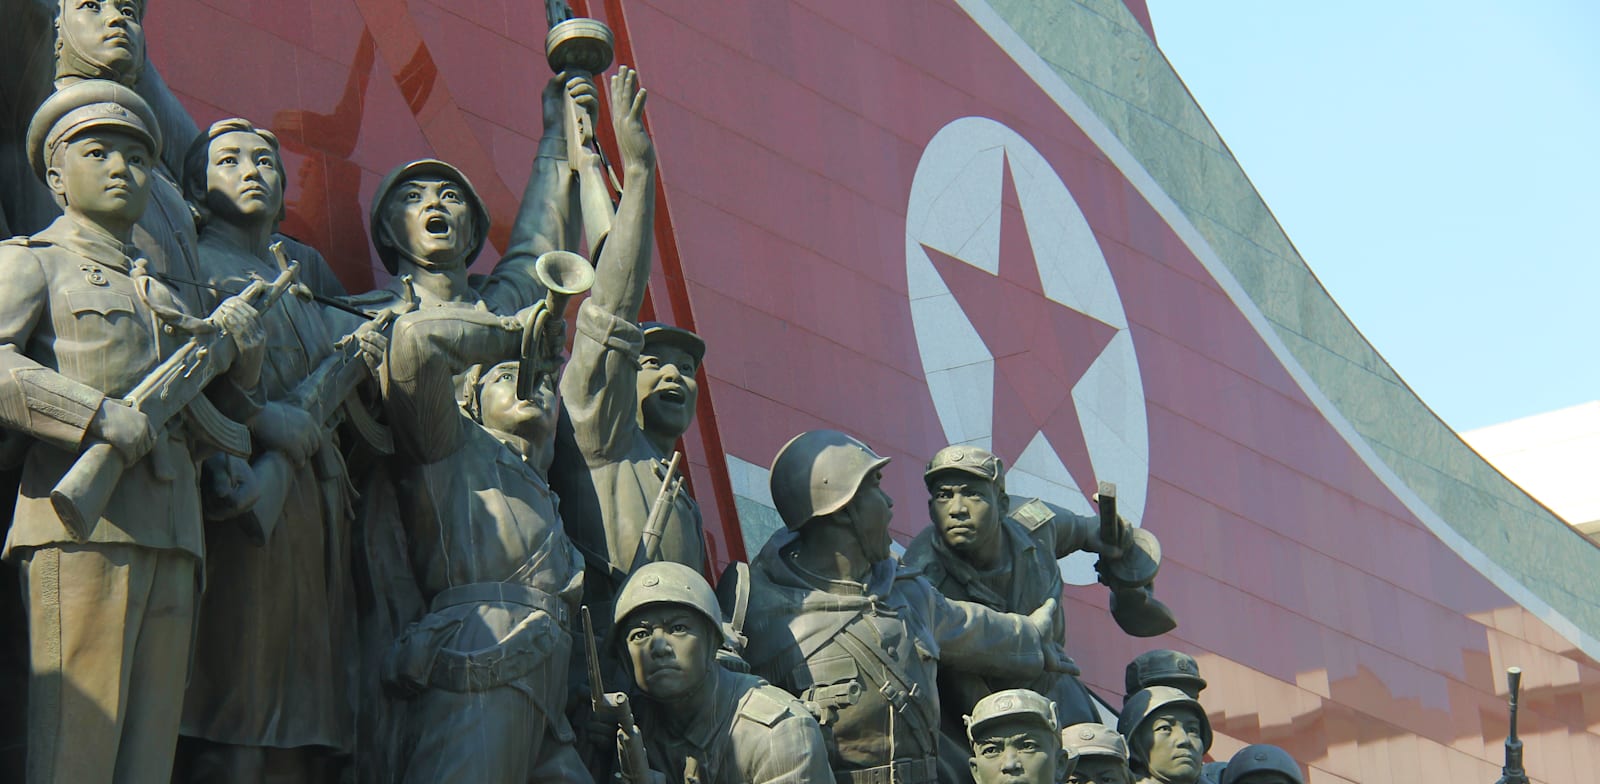 אנדרטה צפון קוריאנית לזכר מלחמת קוריאה. הרגע בו נולדה המלחמה הקרה בין מזרח למערב / צילום: Shutterstock